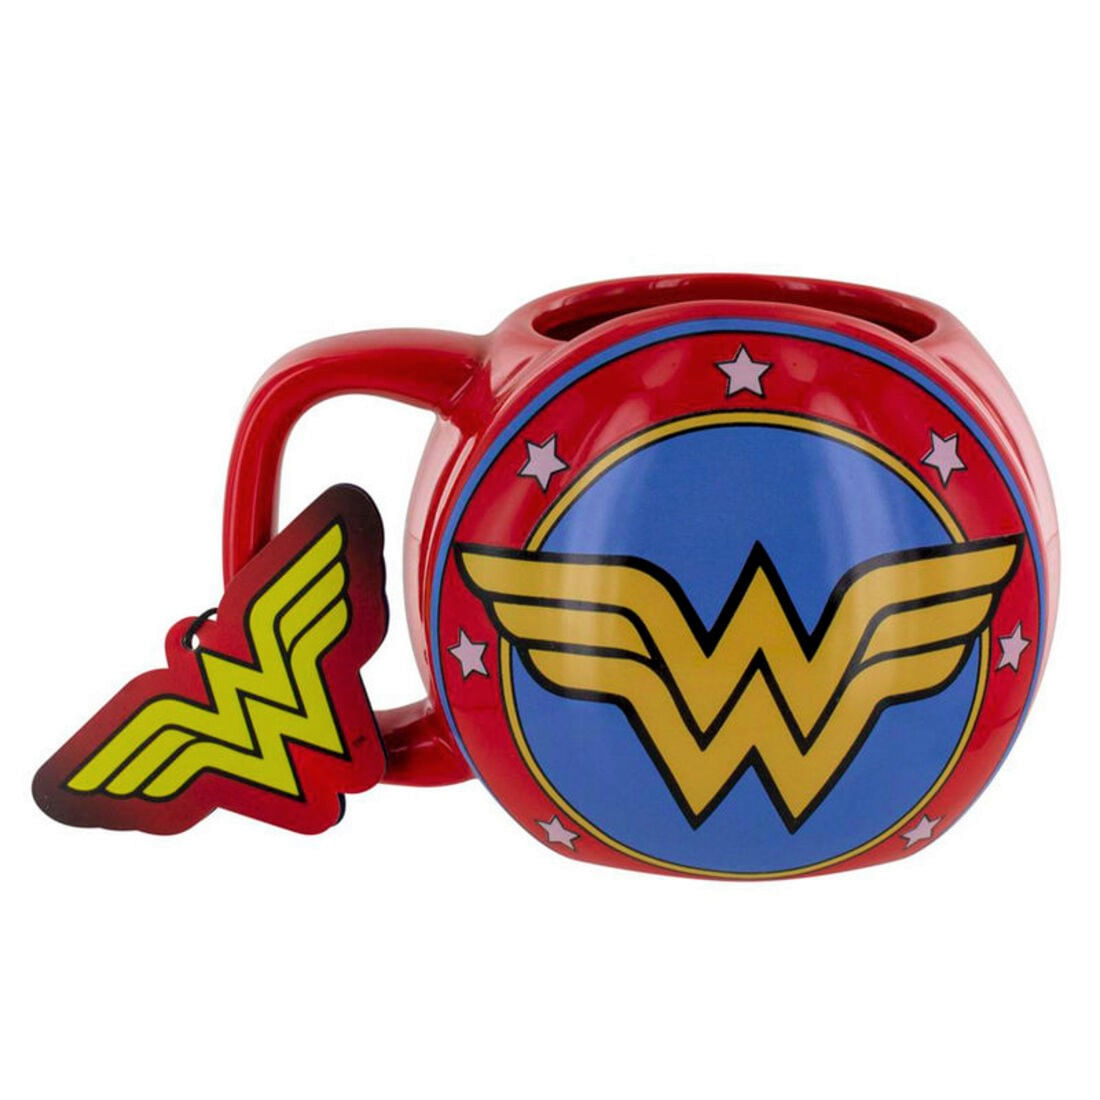 Taza de Cerámica Wonder Woman DC Comics diseño en 3D Redondo